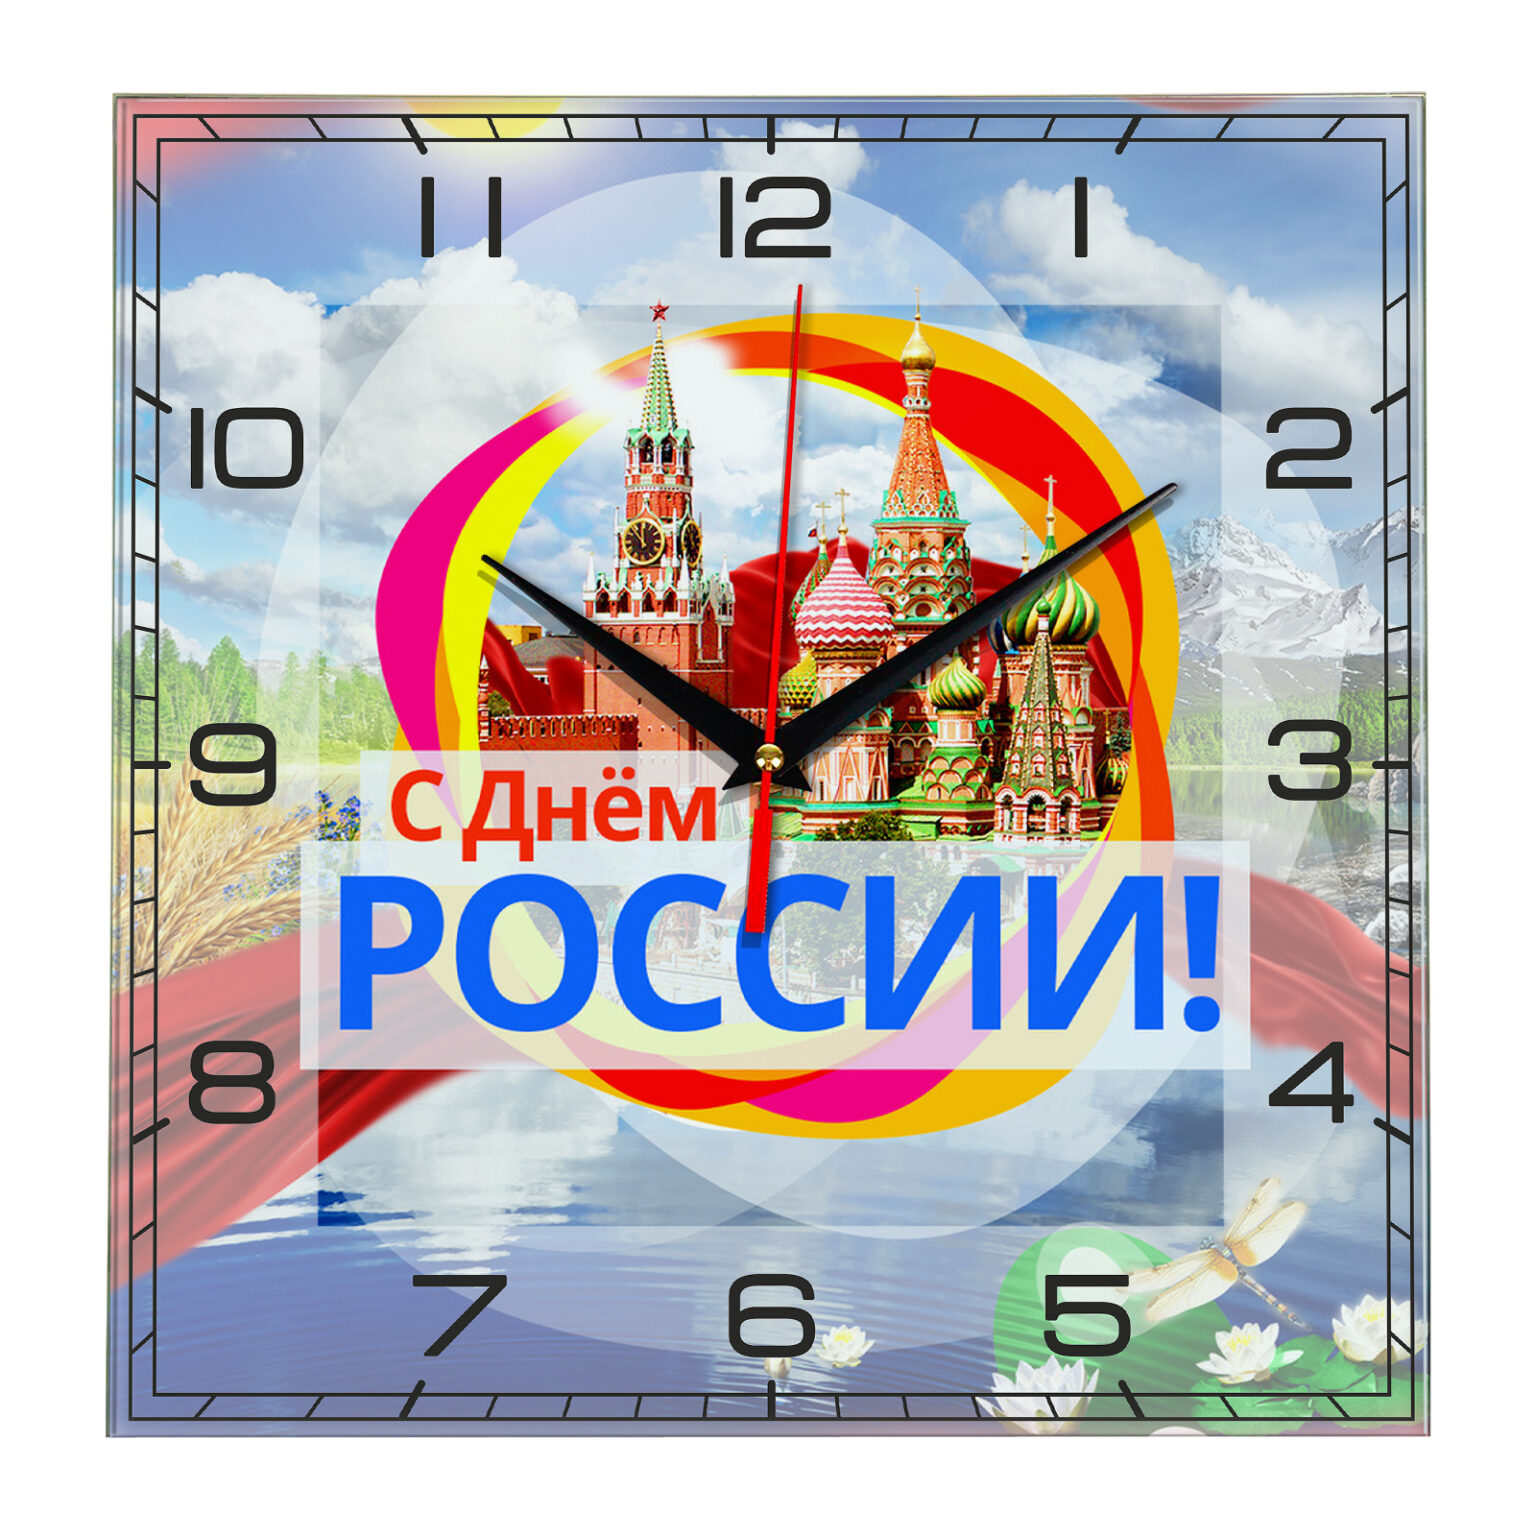 Кл часы россия мои горизонты. Российские часы с календарем.